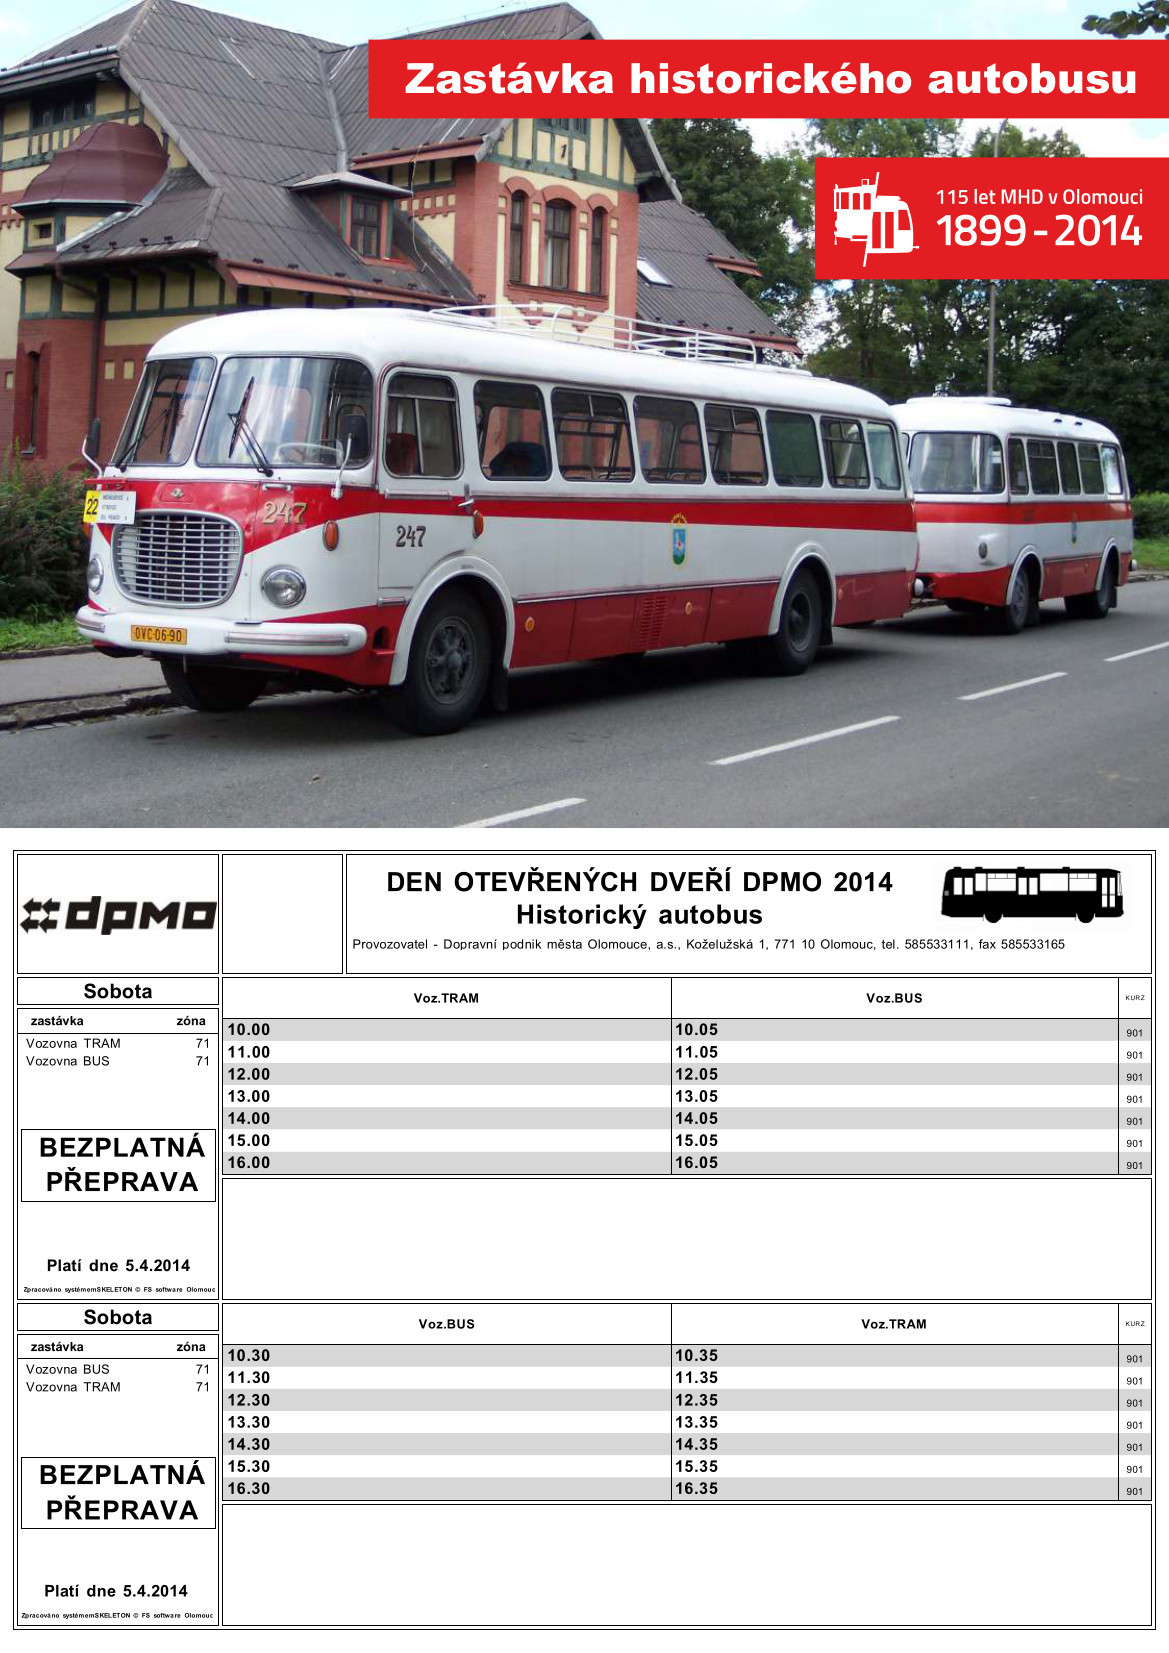 JŘ_DOD2014_bus (1)